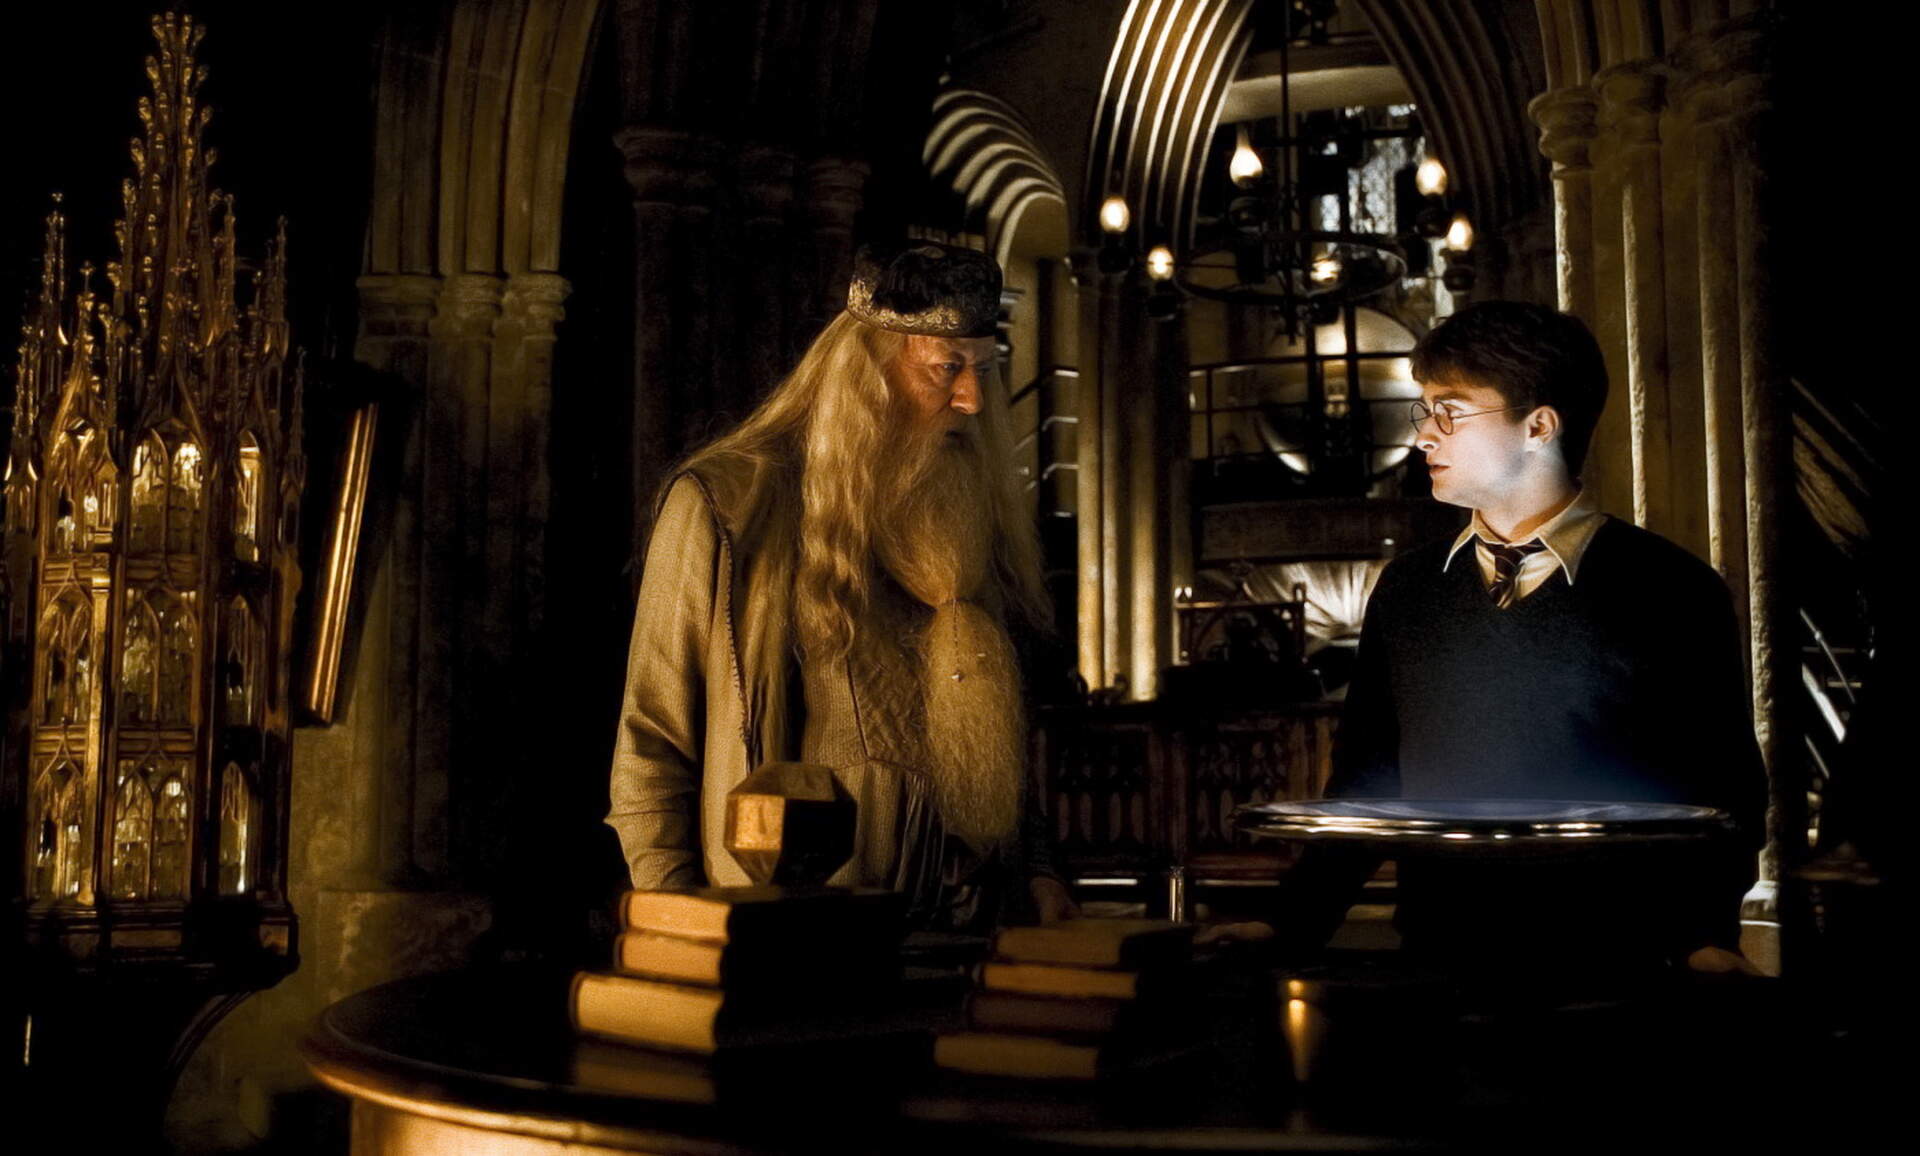 Harry Potter 6 und der Halbblutprinz - Szenenbild 18 von 19